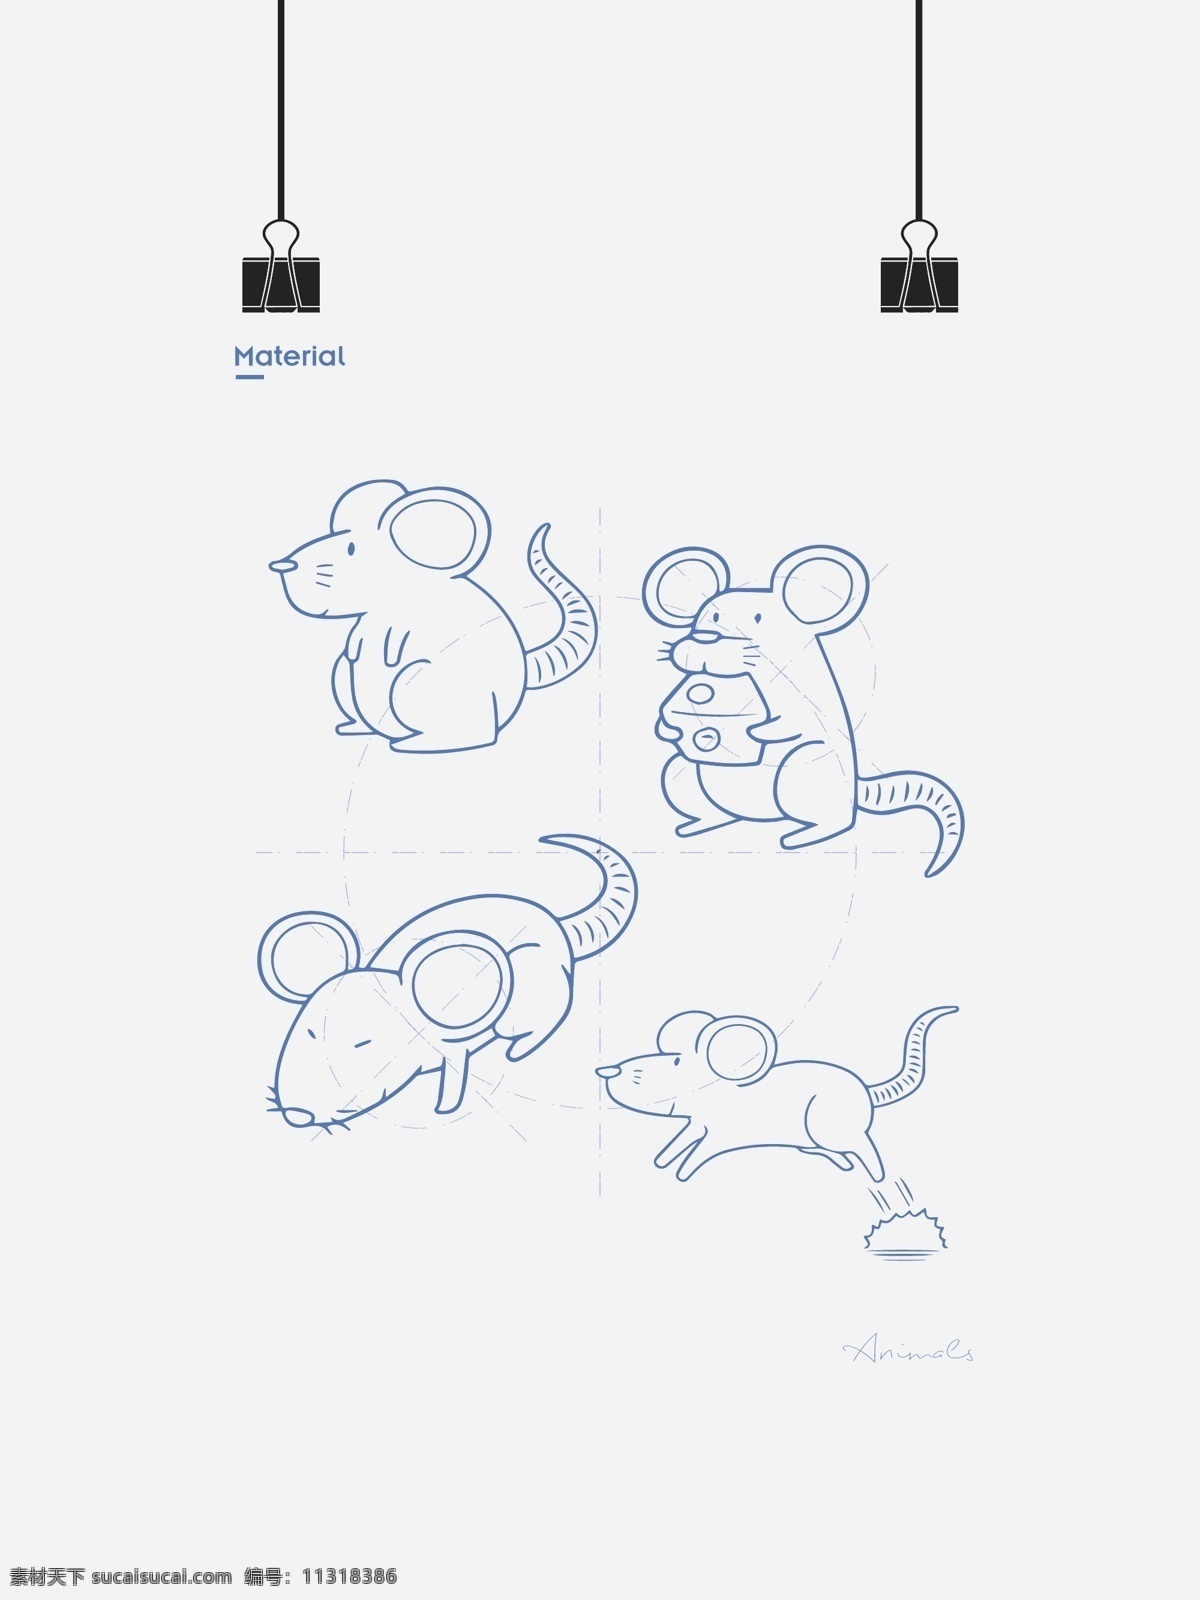 老鼠图标 老鼠图形 老鼠标志 老鼠形状 老鼠矢量 老鼠手绘 鼠 鼠图标 鼠图形 鼠标志 鼠形状 鼠矢量 鼠手绘 鼠年 鼠年图标 鼠年图形 鼠年矢量 矢量 陆 动物 相关 标志图标 其他图标